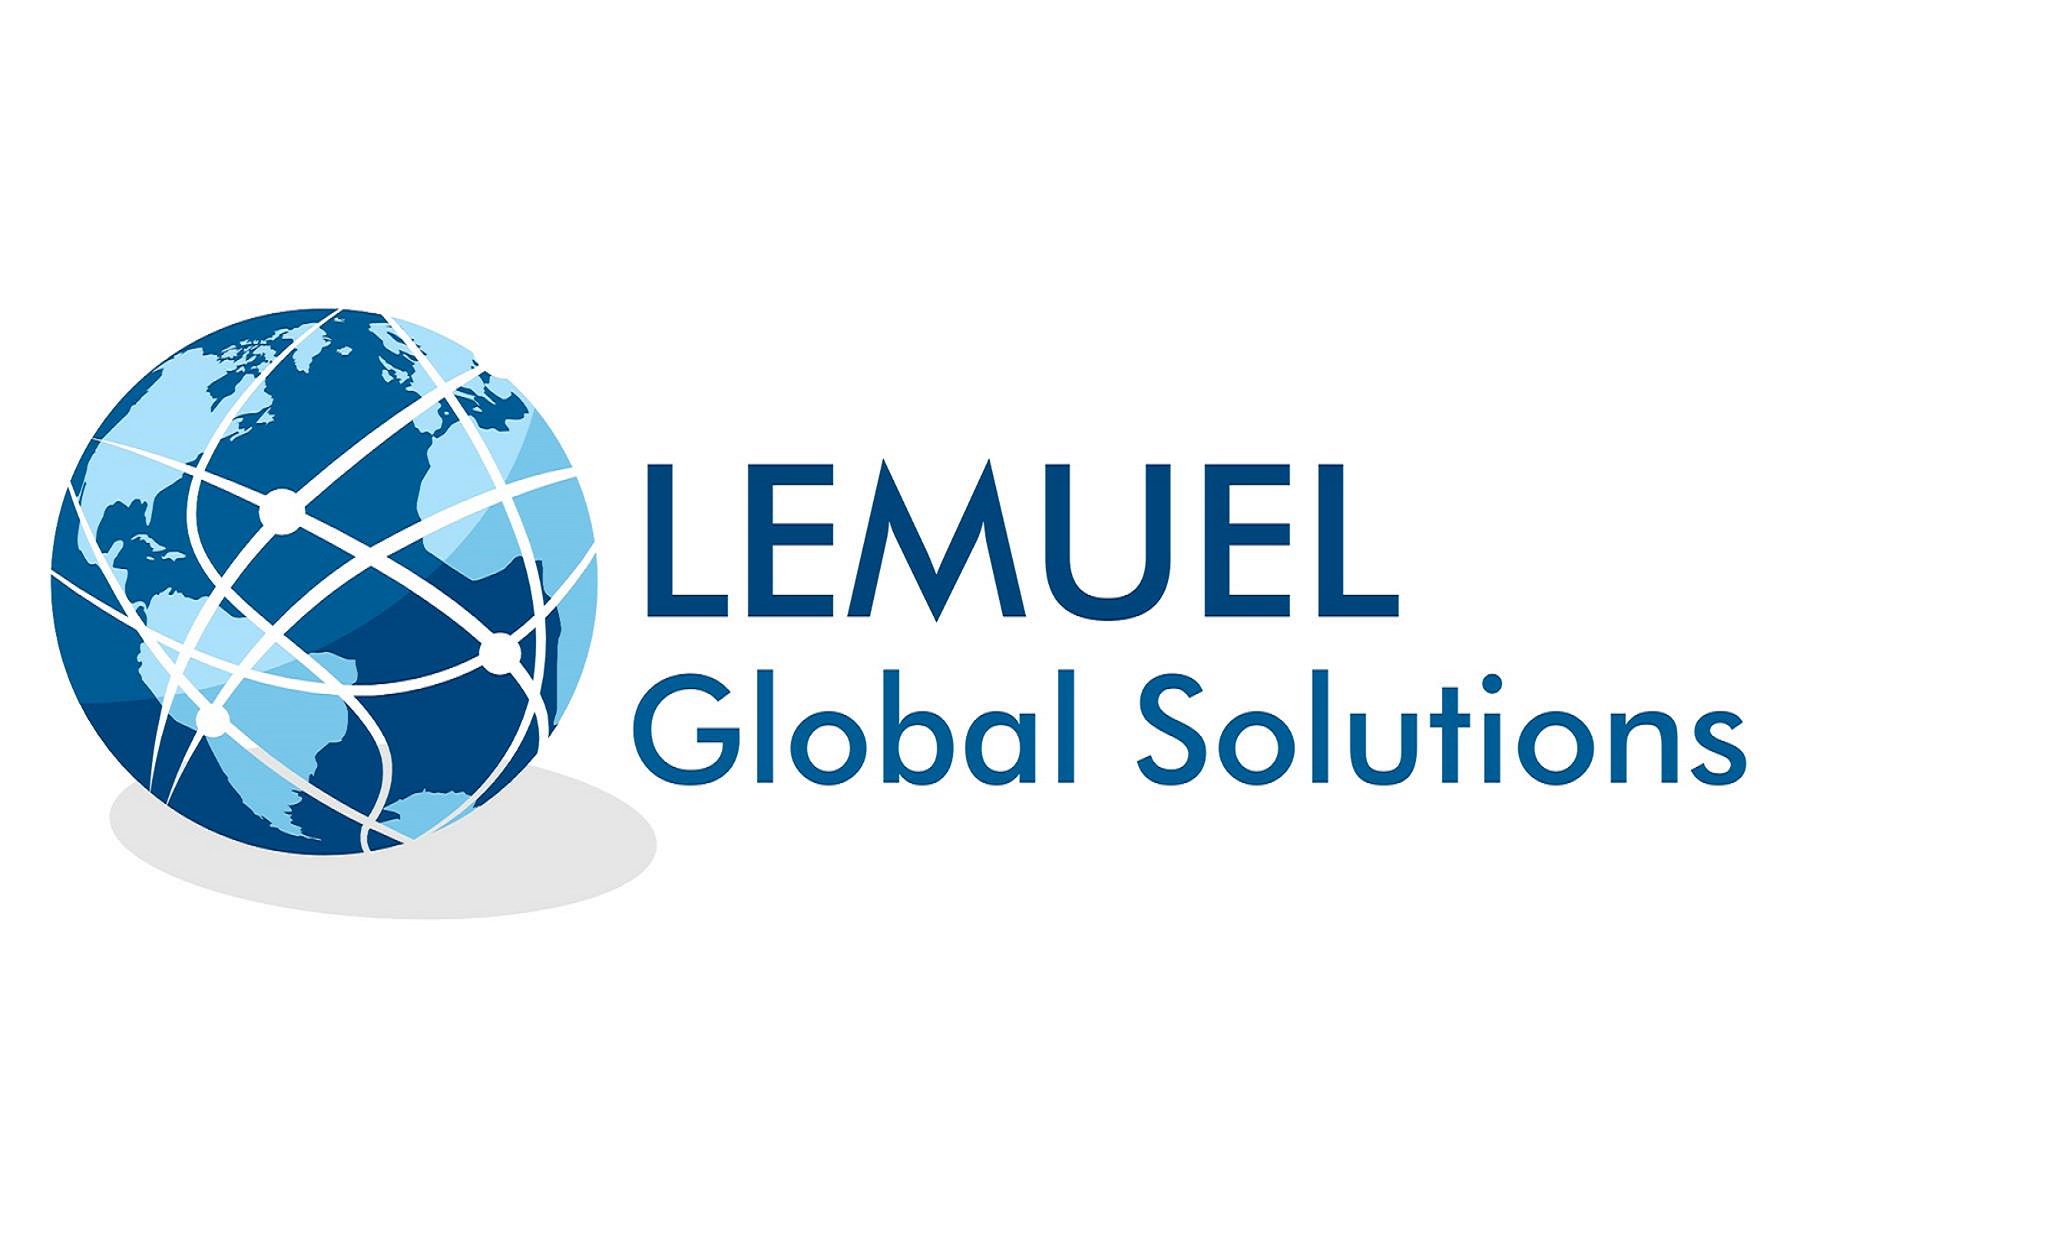 Lemuel Global Solutions